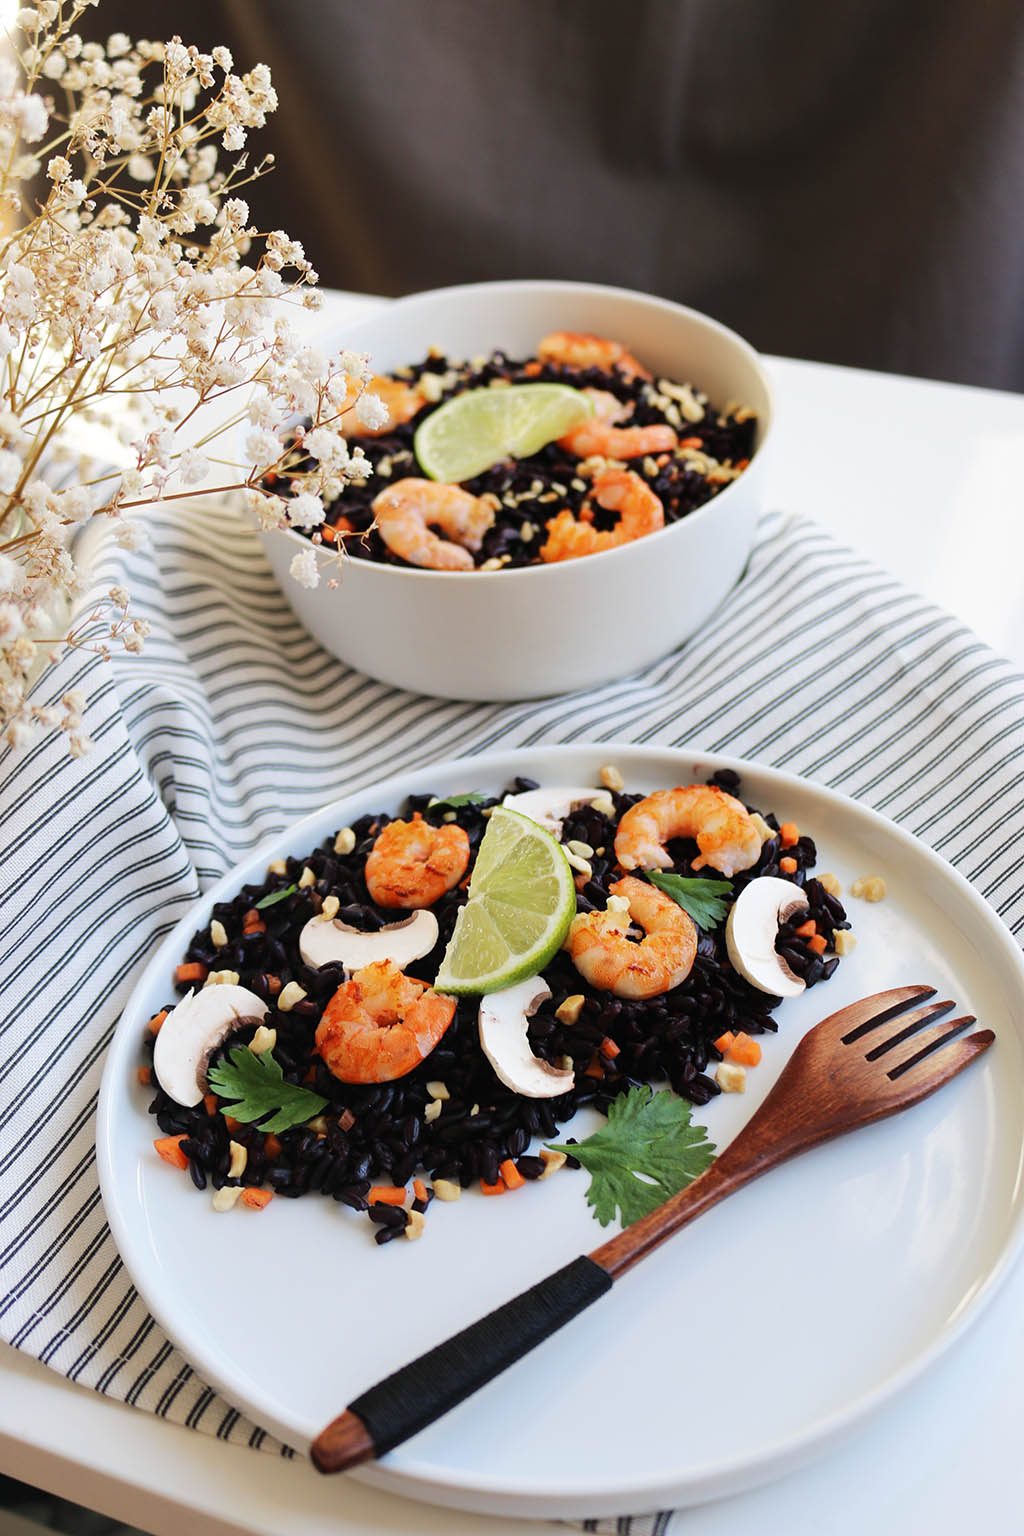 salade de riz noir aux crevettes et petits légumes food recette healthy par le petit monde d'elodie